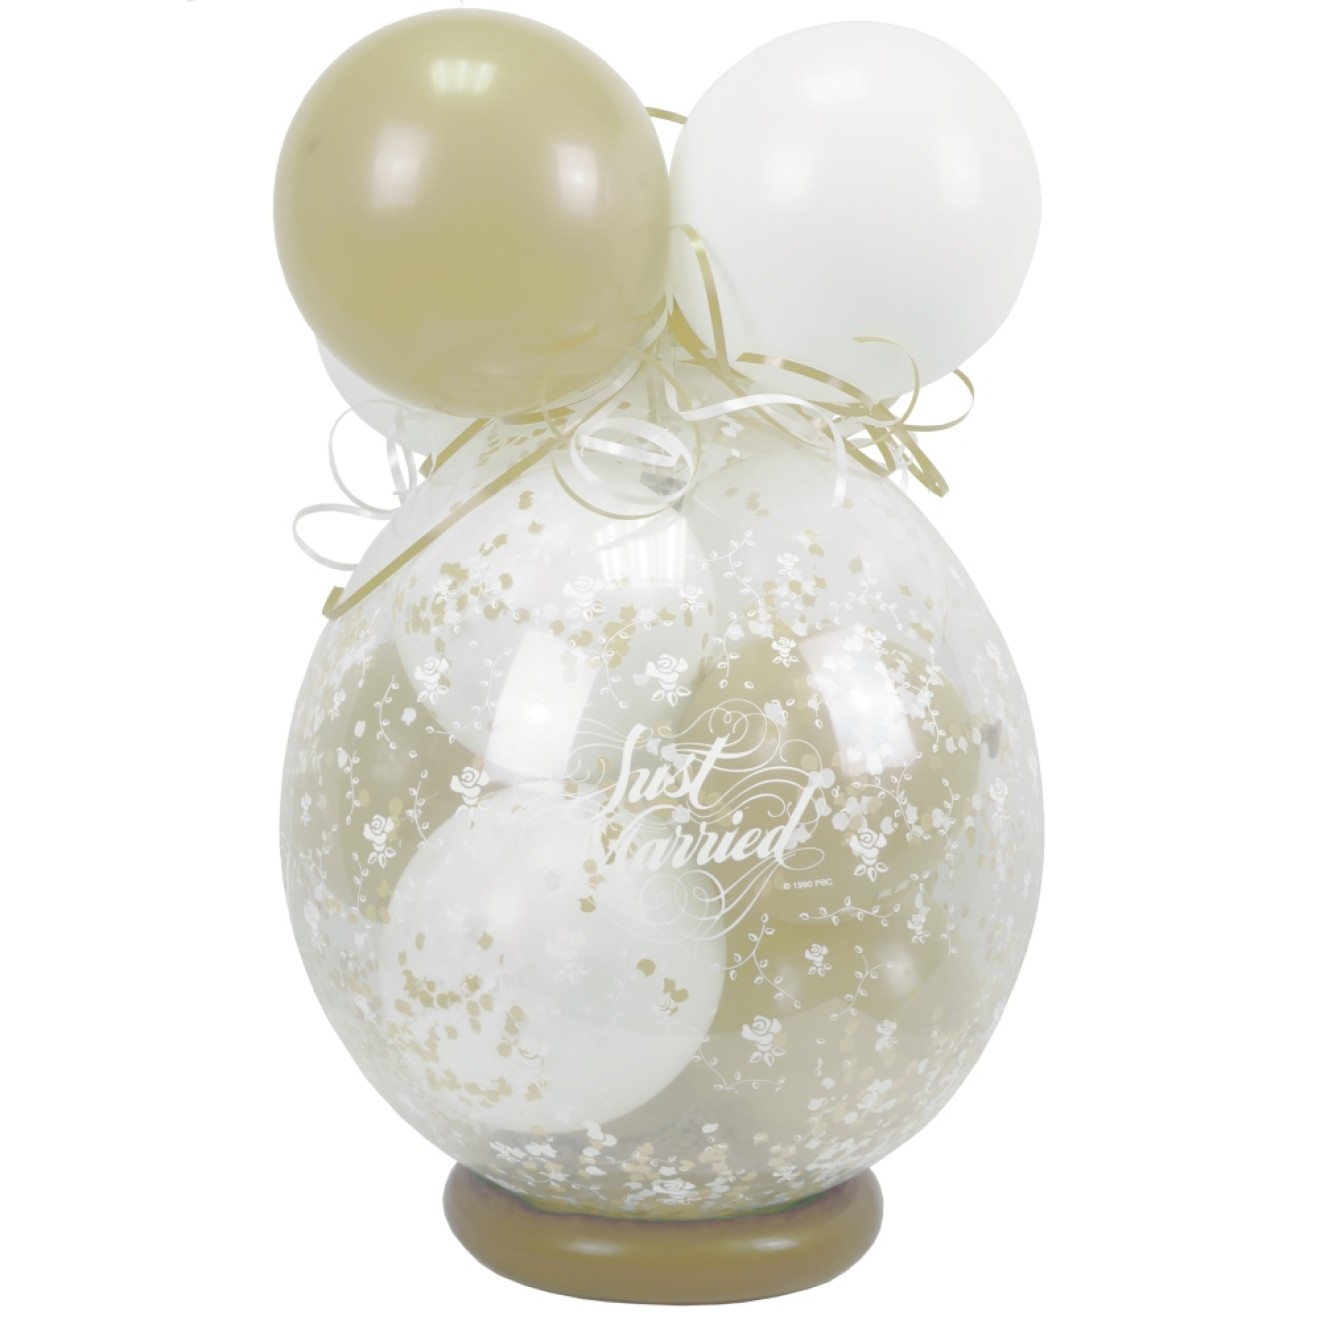 Verpackungsballon Geschenkballon Hochzeit: Just Married - Weiß & Creme - Basic Ø 50 cm